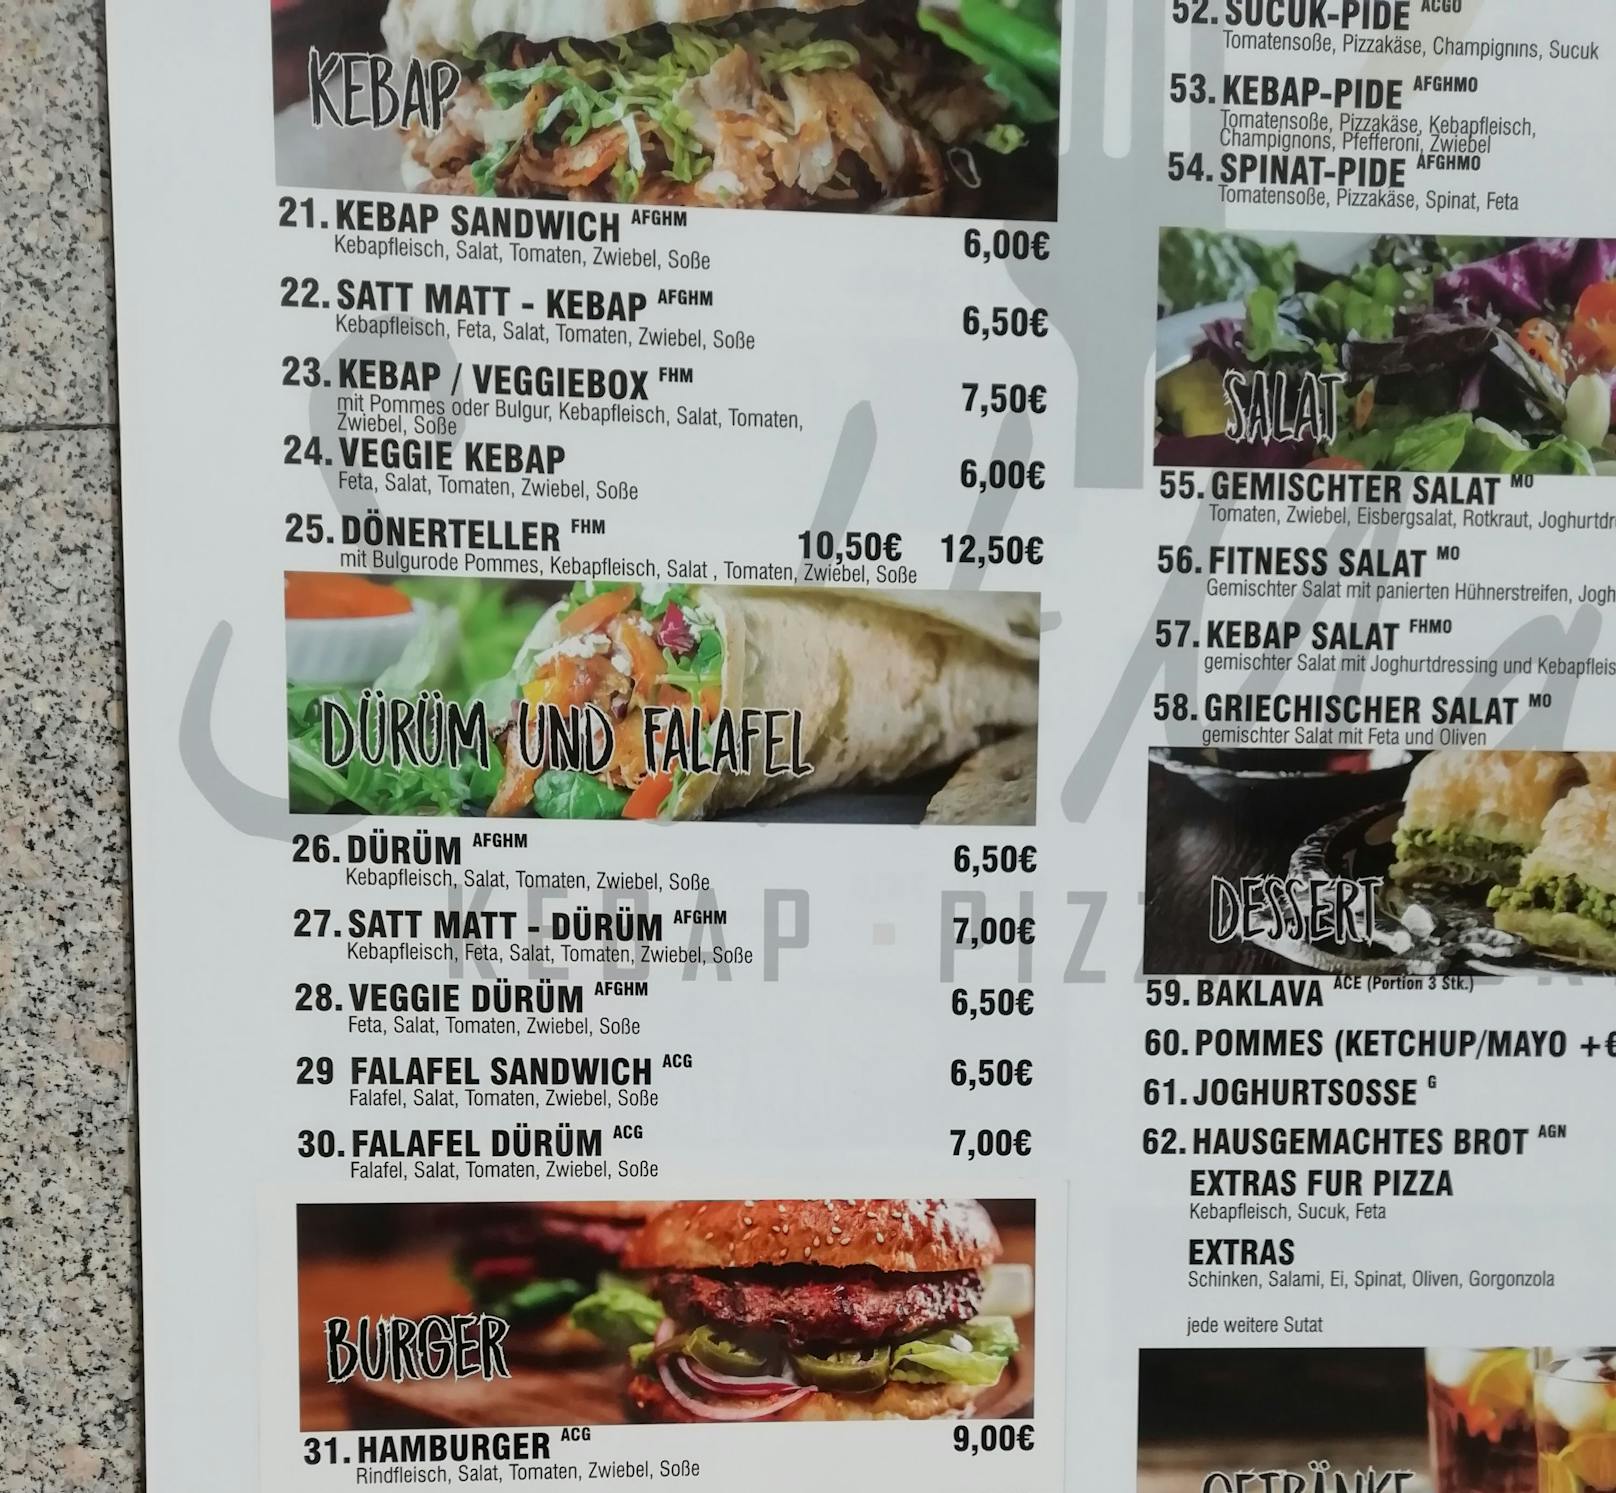 Beim <em>"Heute"</em>-Rundgang im Welser Stadtzentrum entdeckt: In einem Fast-Food-Restaurant kostet ein Kebab Sandwich bereits 6 Euro.